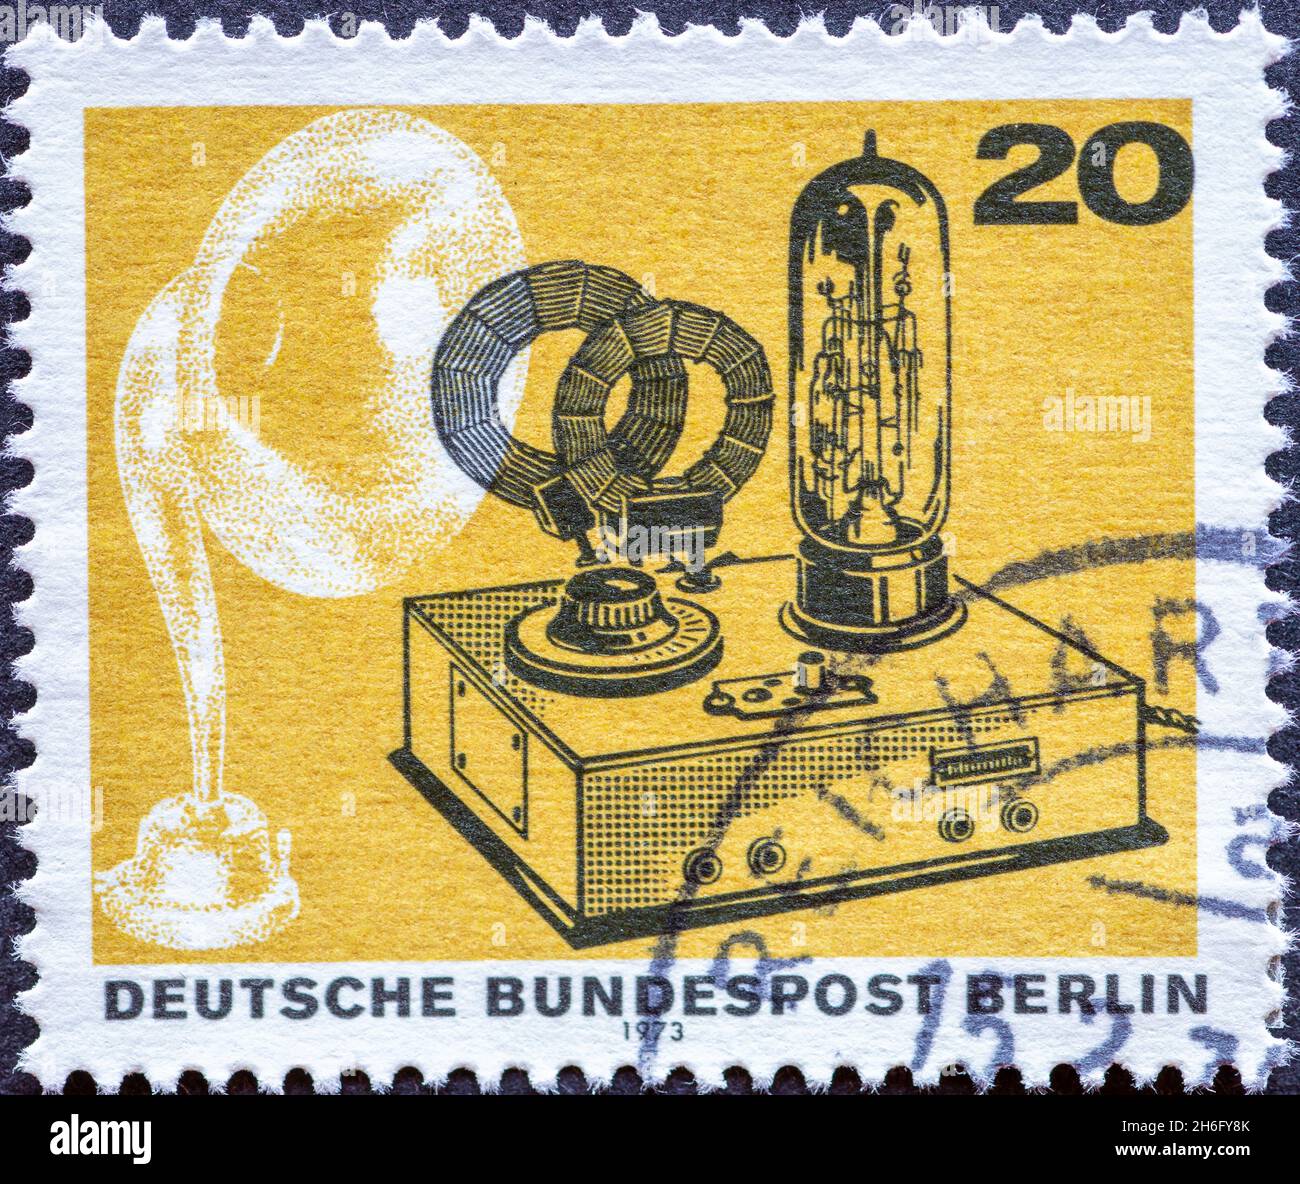 ALLEMAGNE, Berlin - VERS 1973: Timbre-poste de l'Allemagne, Berlin montrant 50 ans de radiodiffusion allemande.Haut-parleur à entonnoir de 1924 et batterie r Banque D'Images